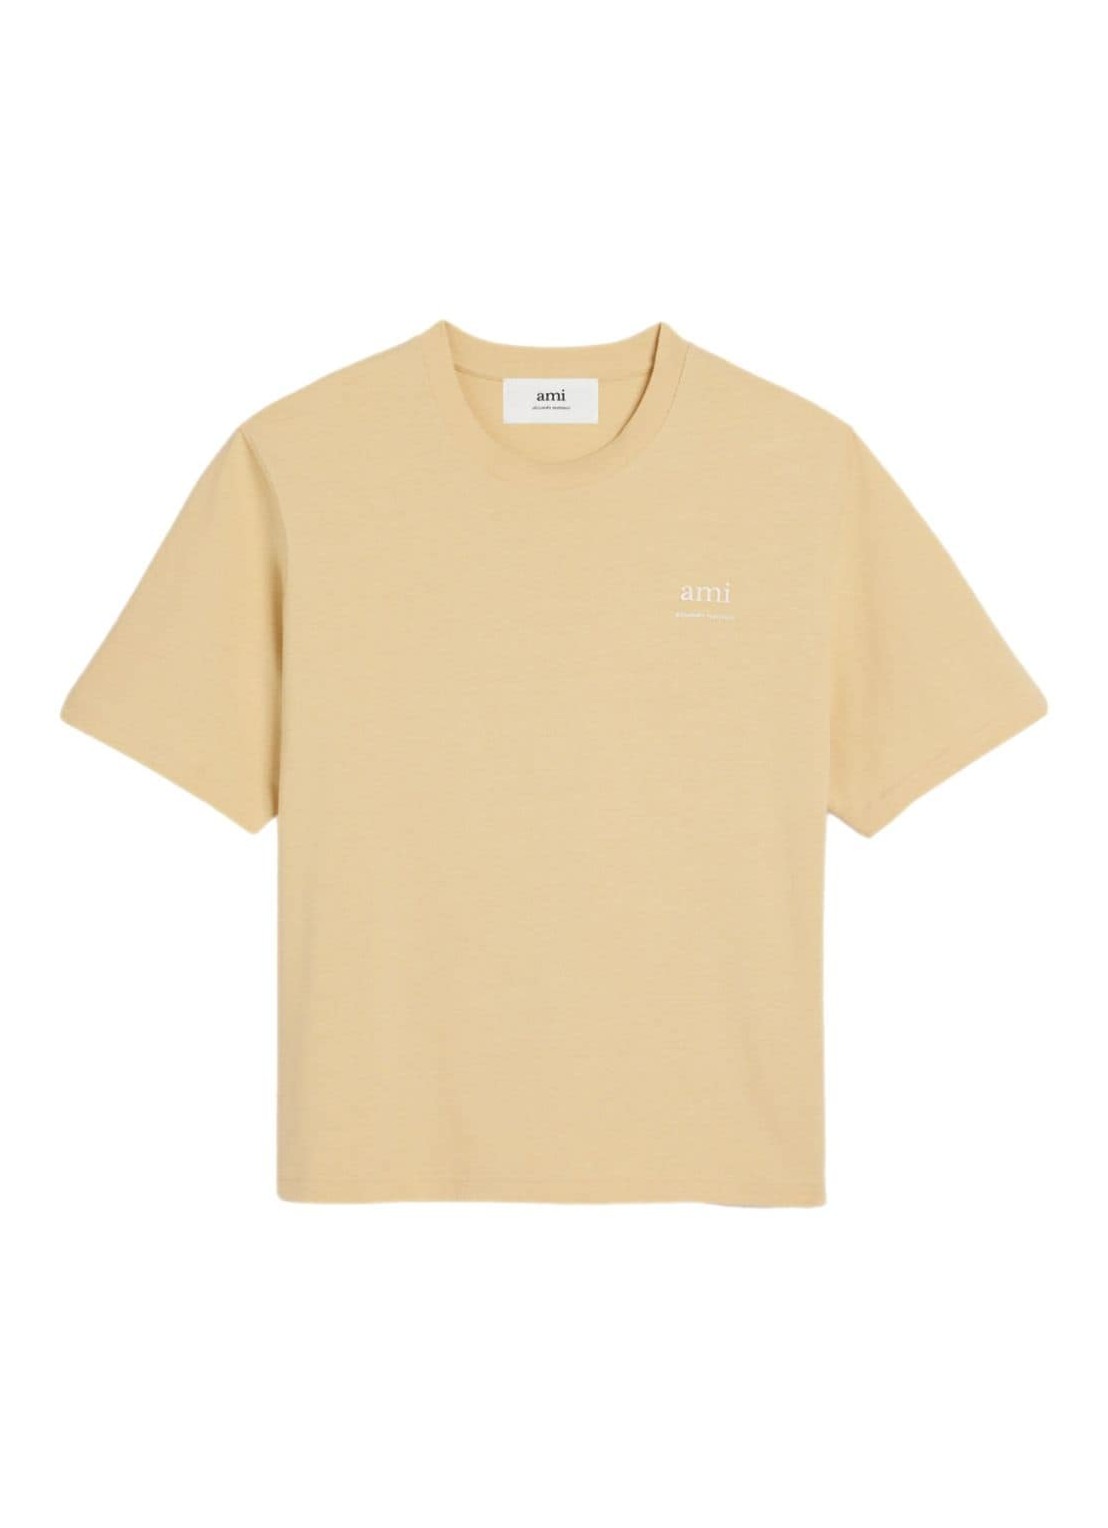 Camiseta ami t-shirt mantshirt ami am - uts024726 721 talla beige
 